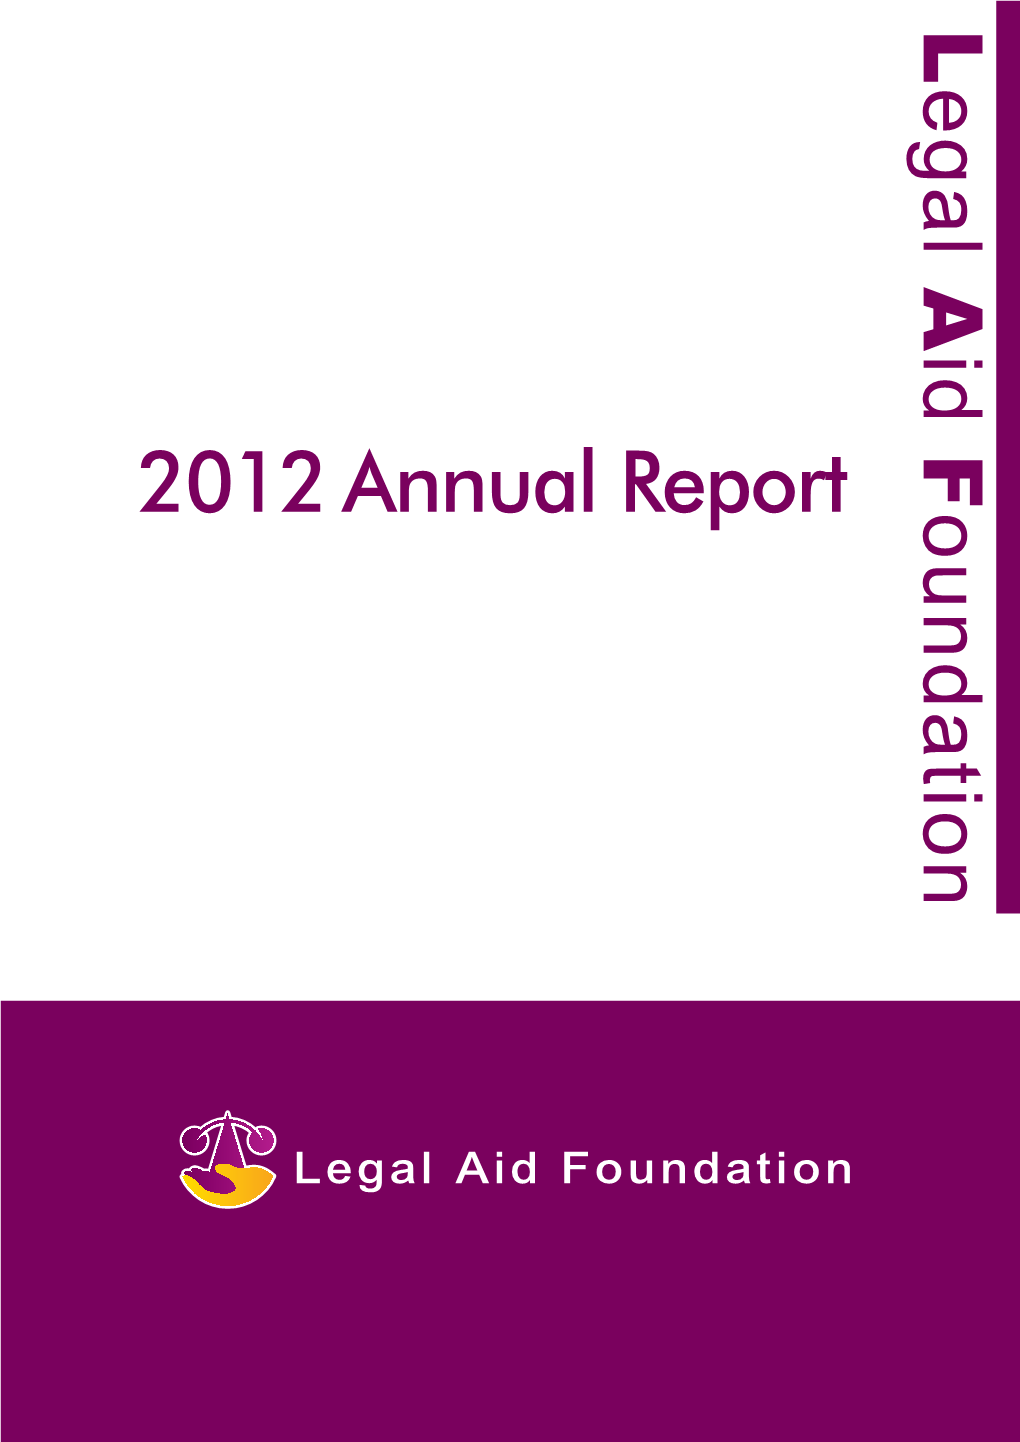 2012 Annual Report Ounda T Io N Legal Aid Foundation